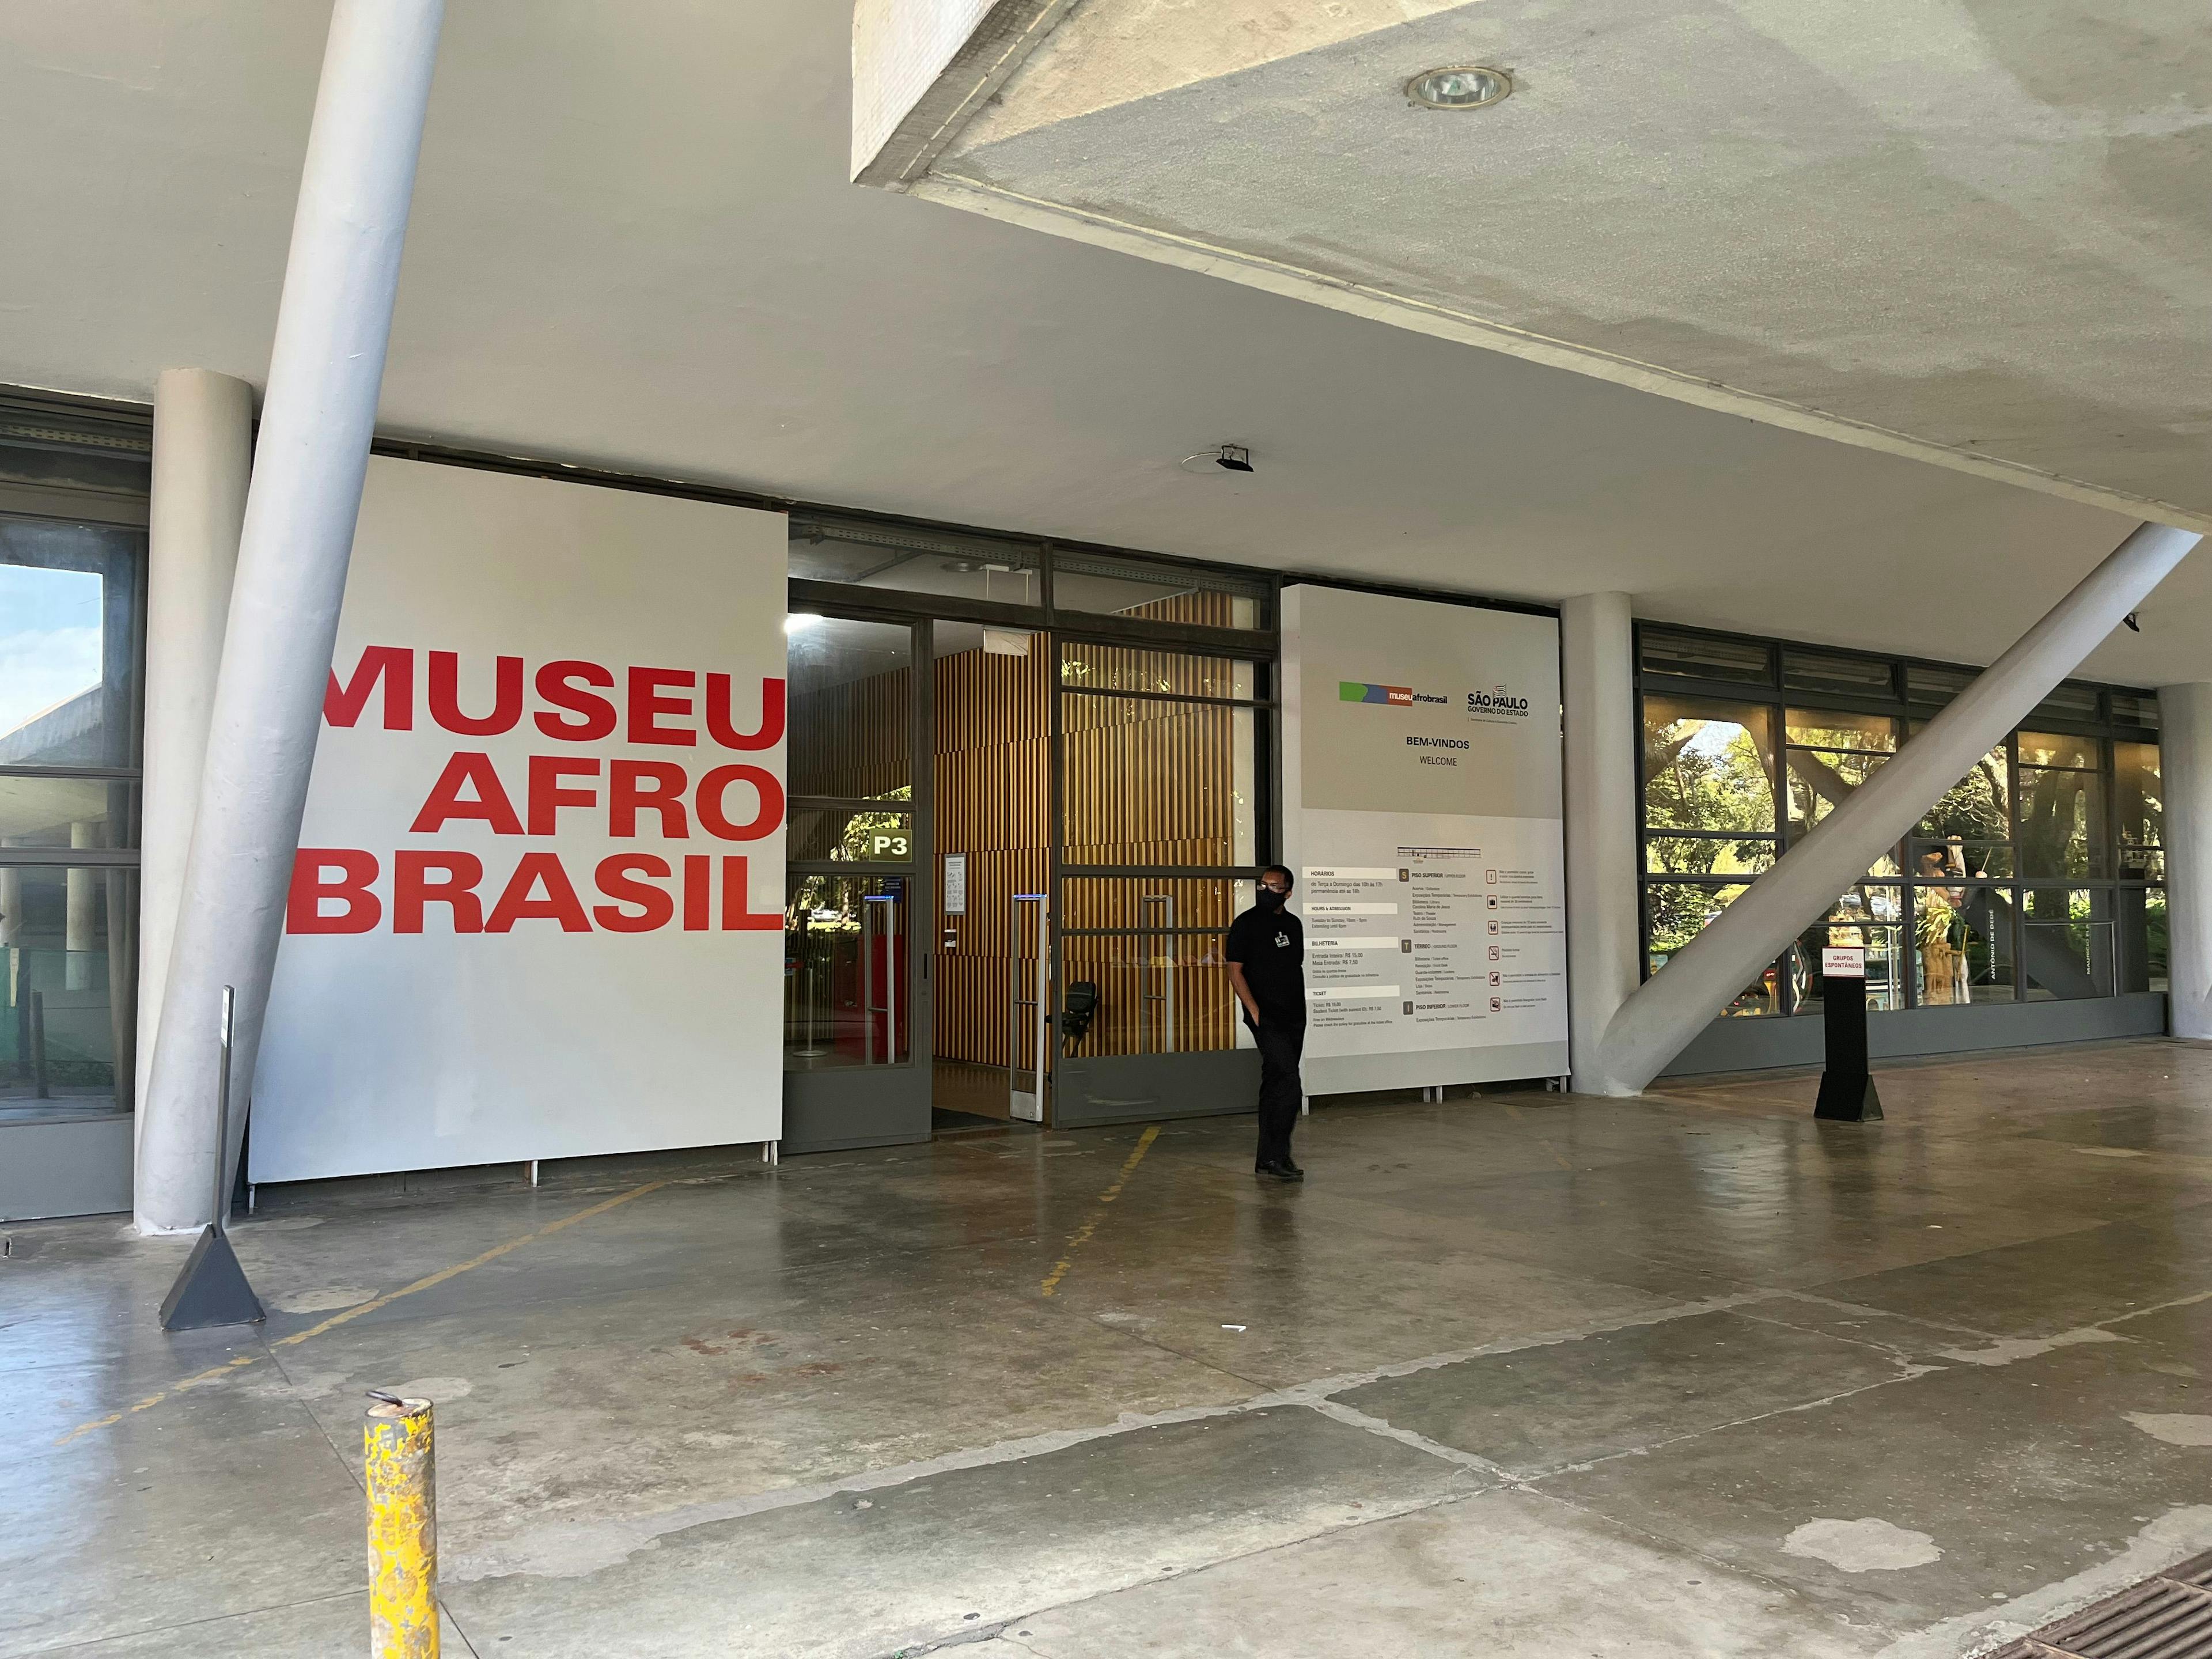 Inauguração da mostra “Mães - No imaginário da arte” no Museu Afro Brasil e novo espaço de fomento ao esporte integram a programação do fim de semana do Parque Ibirapuera